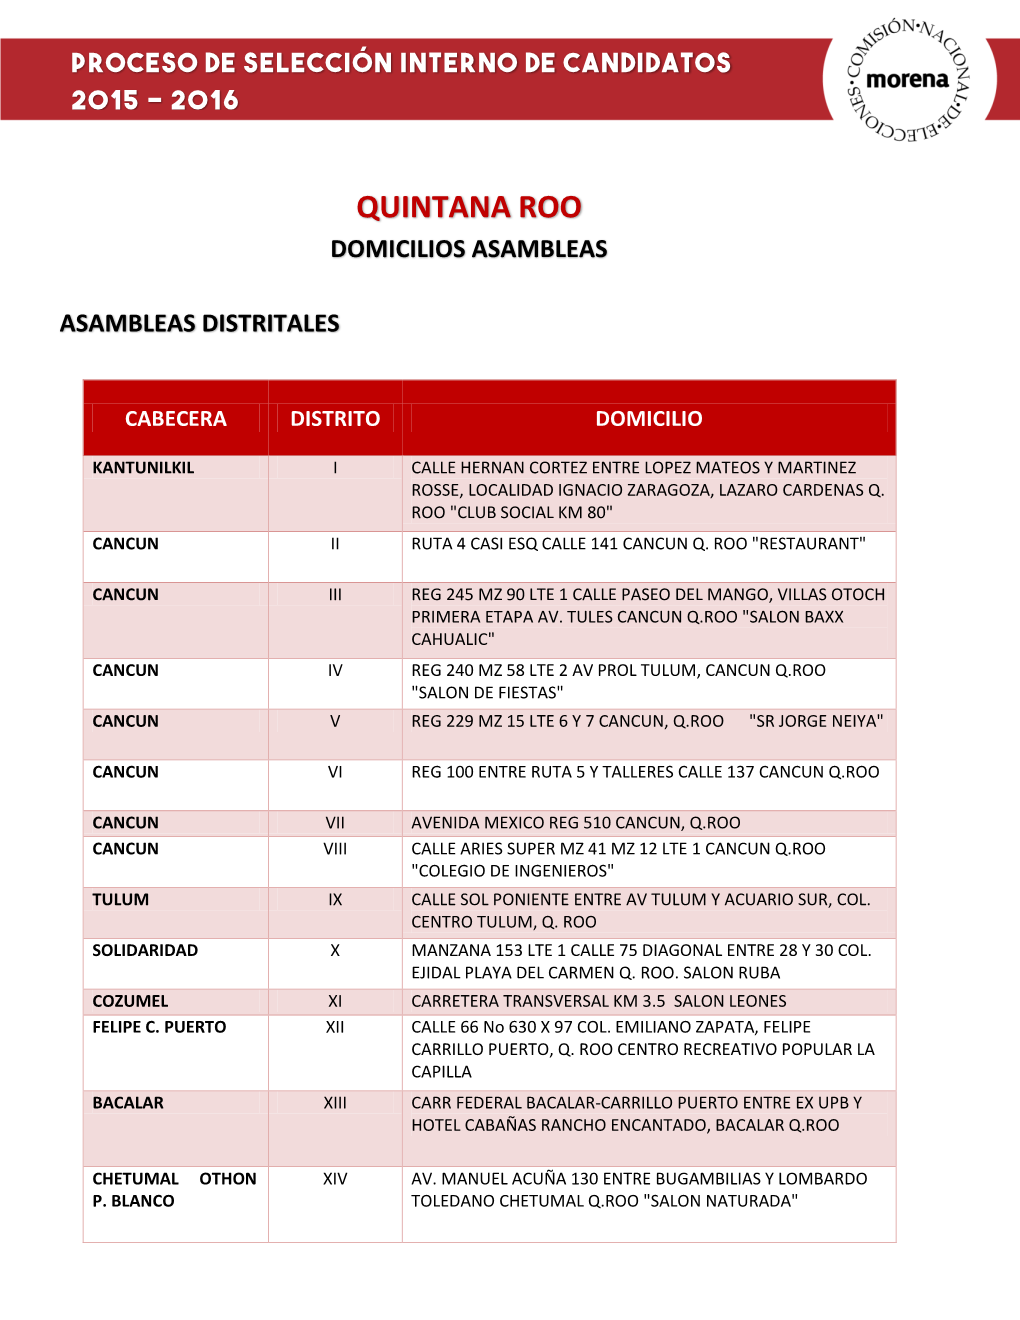 Quintana Roo Domicilios Asambleas